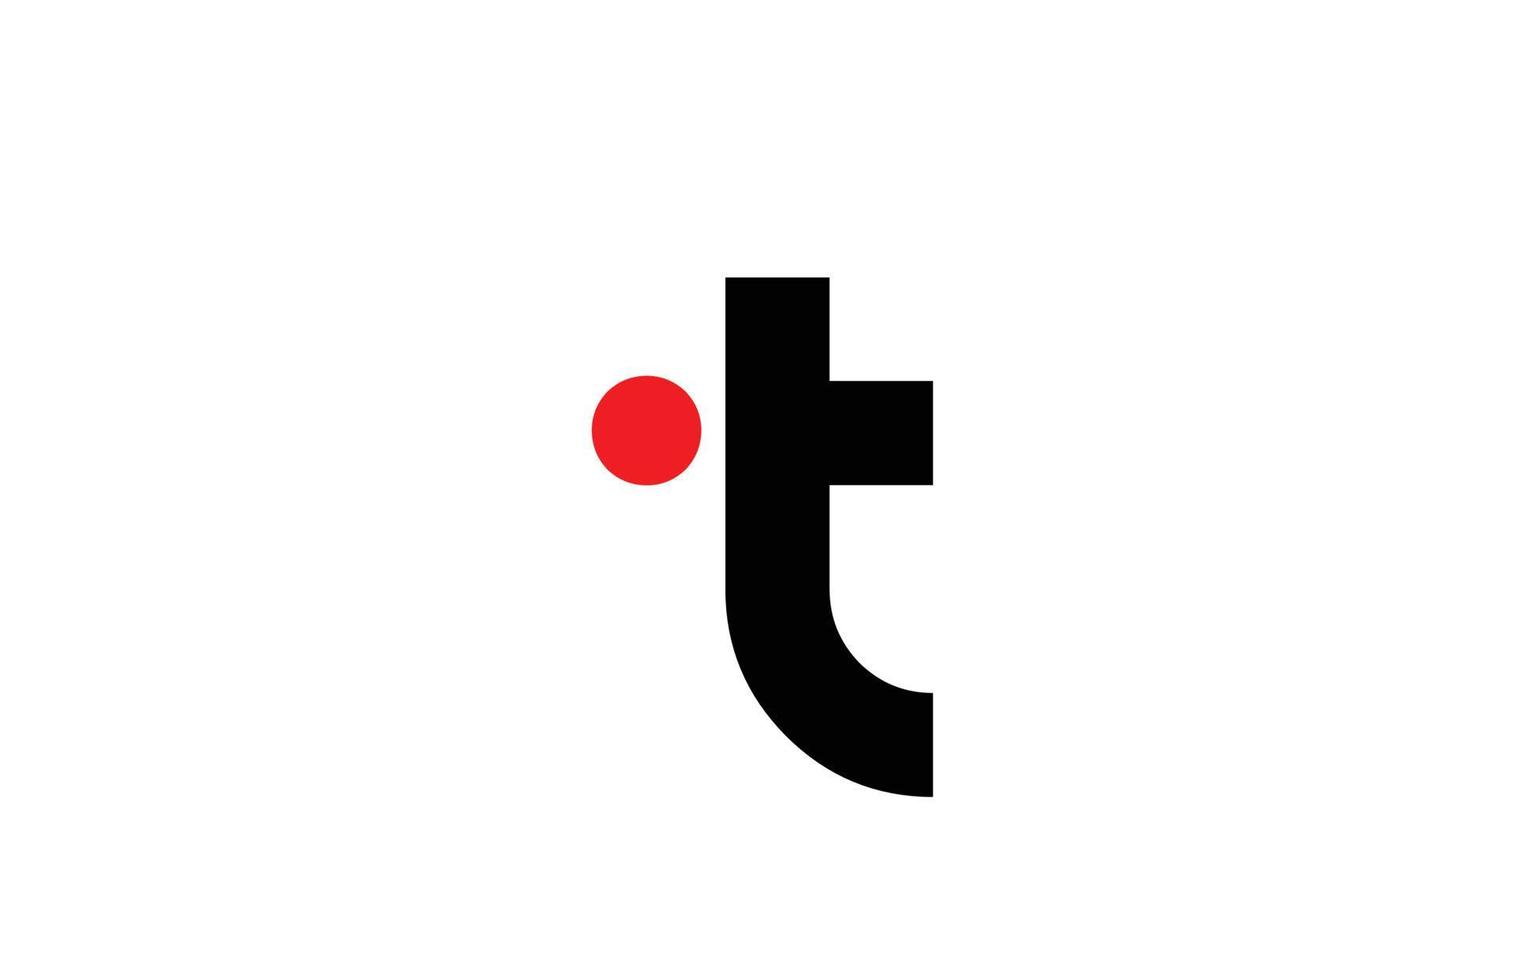 zwart wit t alfabet letter logo pictogram ontwerp. creatieve sjabloon voor zaken en bedrijf vector